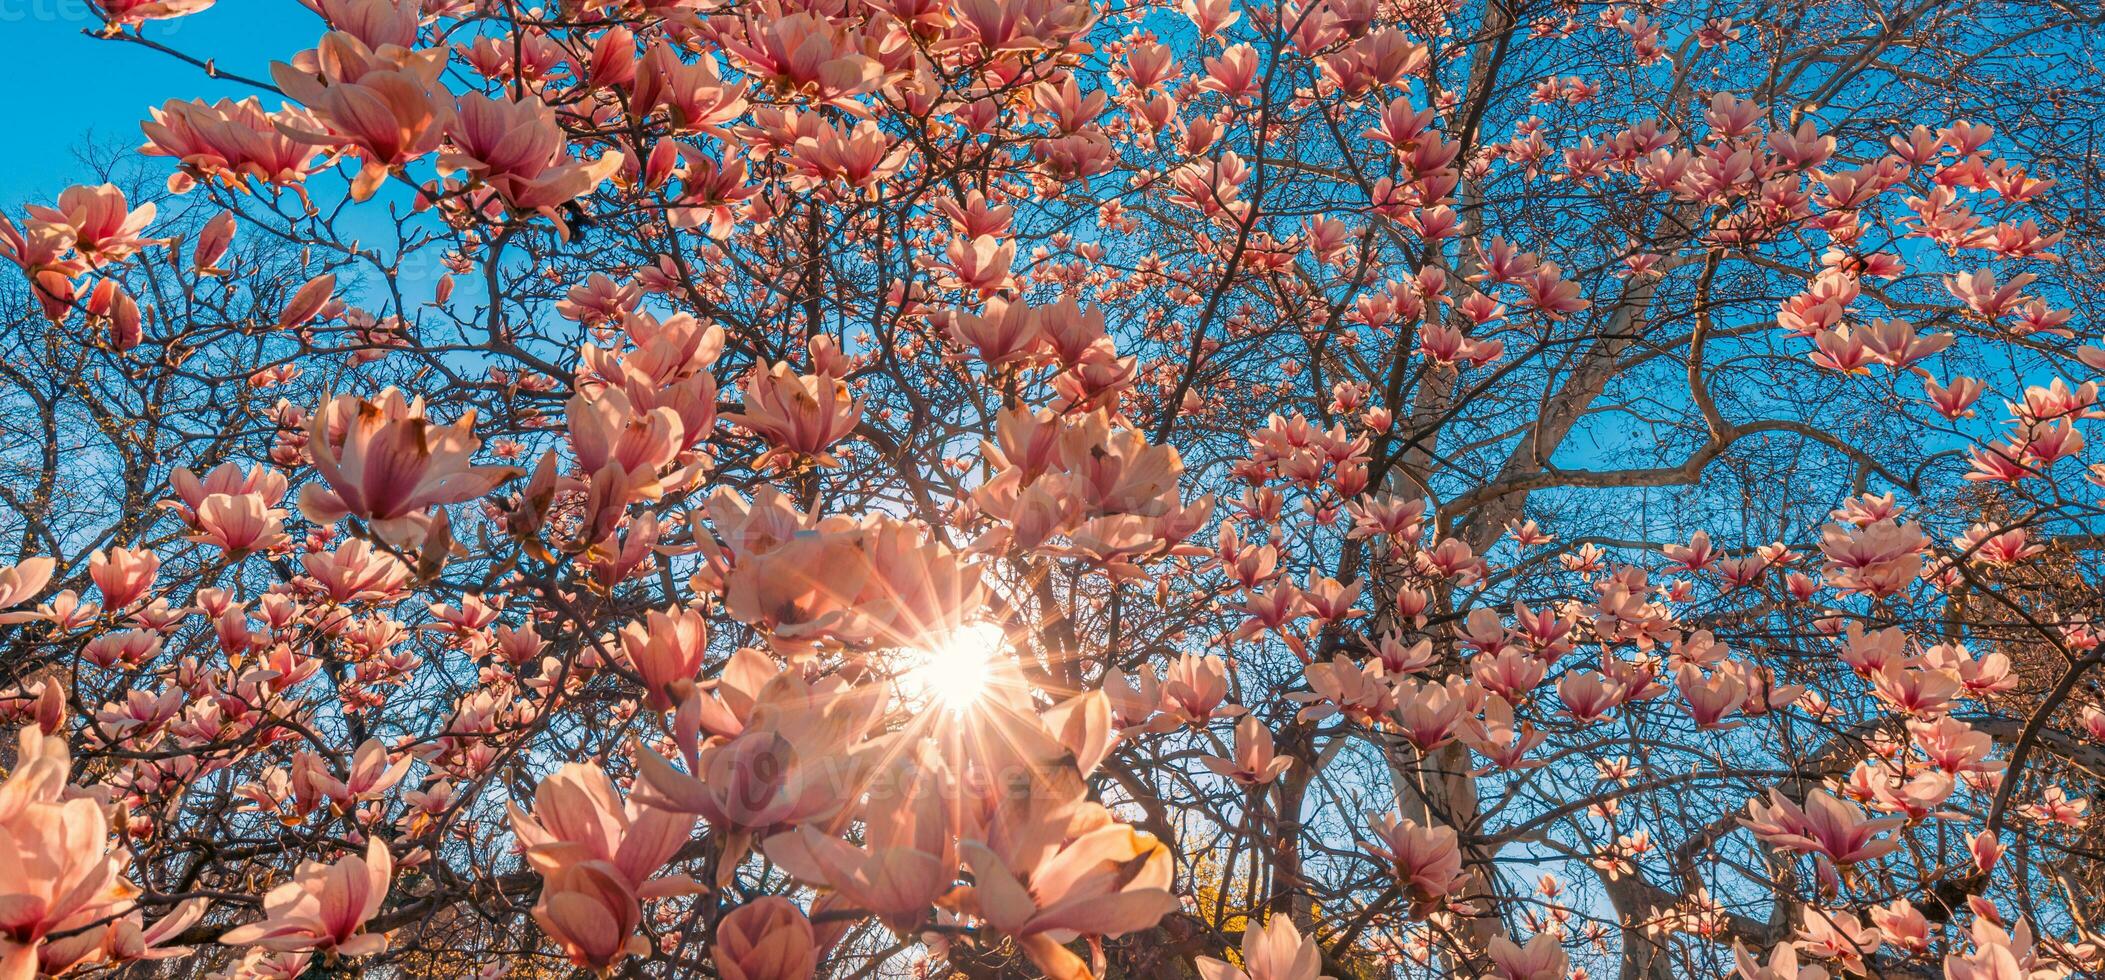 perfekt Natur Hintergrund zum Frühling oder Sommer- Blumen- Muster Hintergrund. Rosa Magnolie Blumen und Sanft Blau Himmel und Sonne Strahlen wie entspannend launisch Nahaufnahme. tolle Natur Szene, verträumt Blumen foto